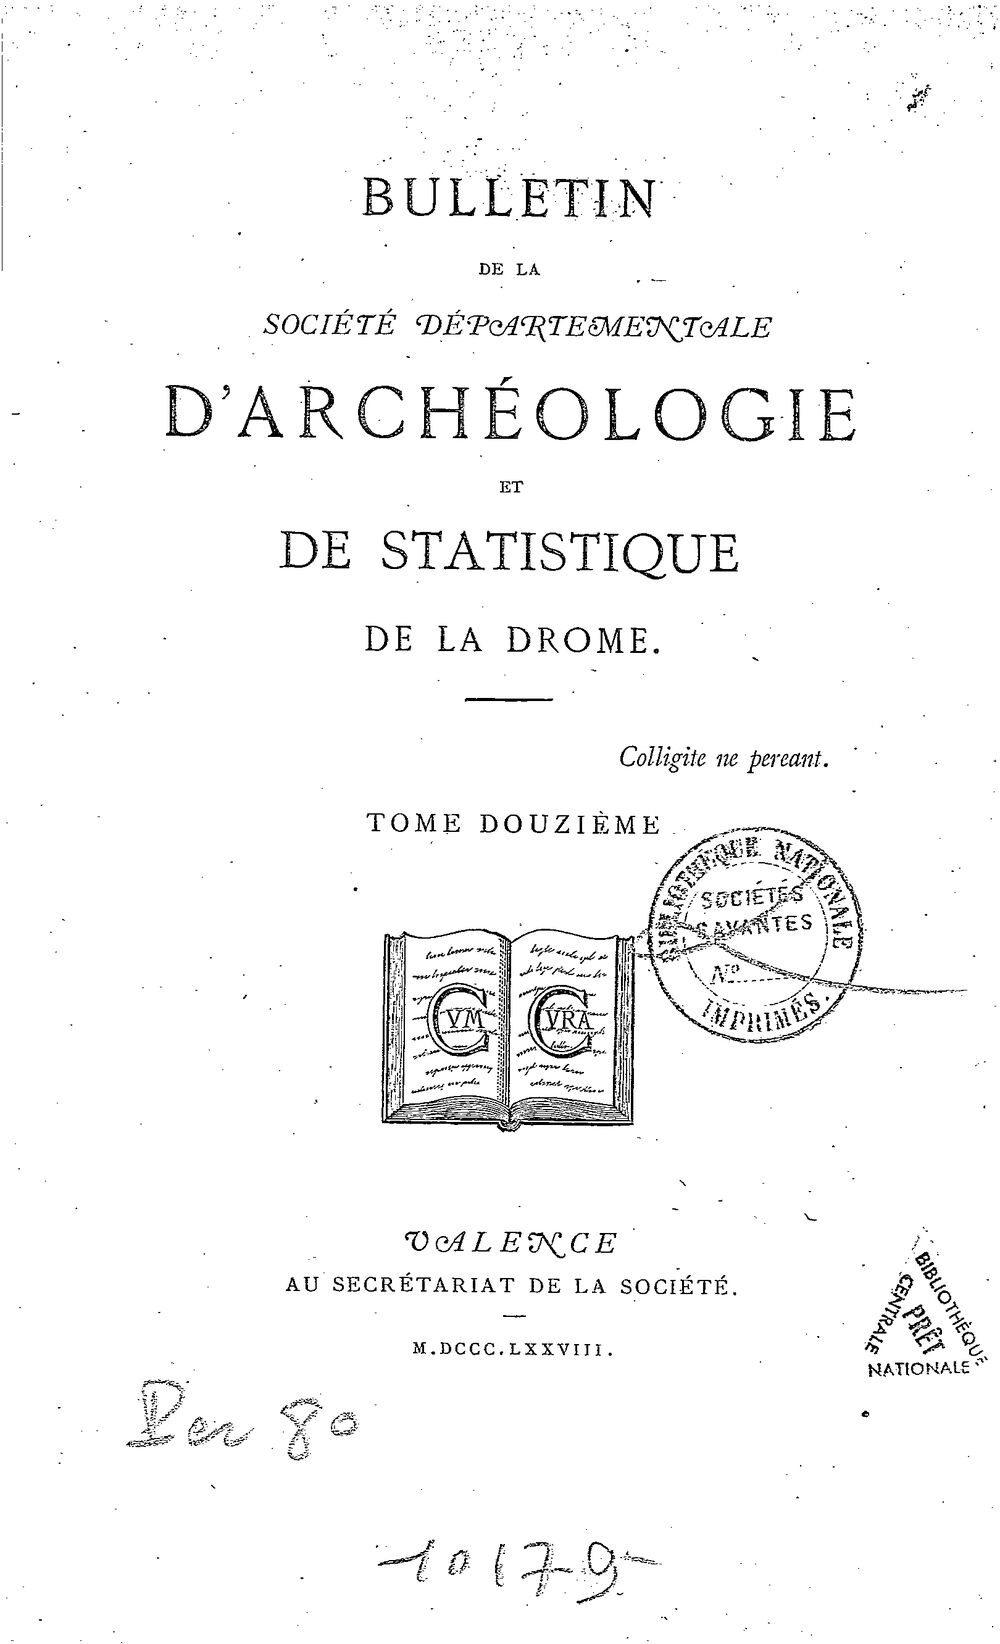 Bulletin de la Société d'archéologie et de statistique de la Drôme